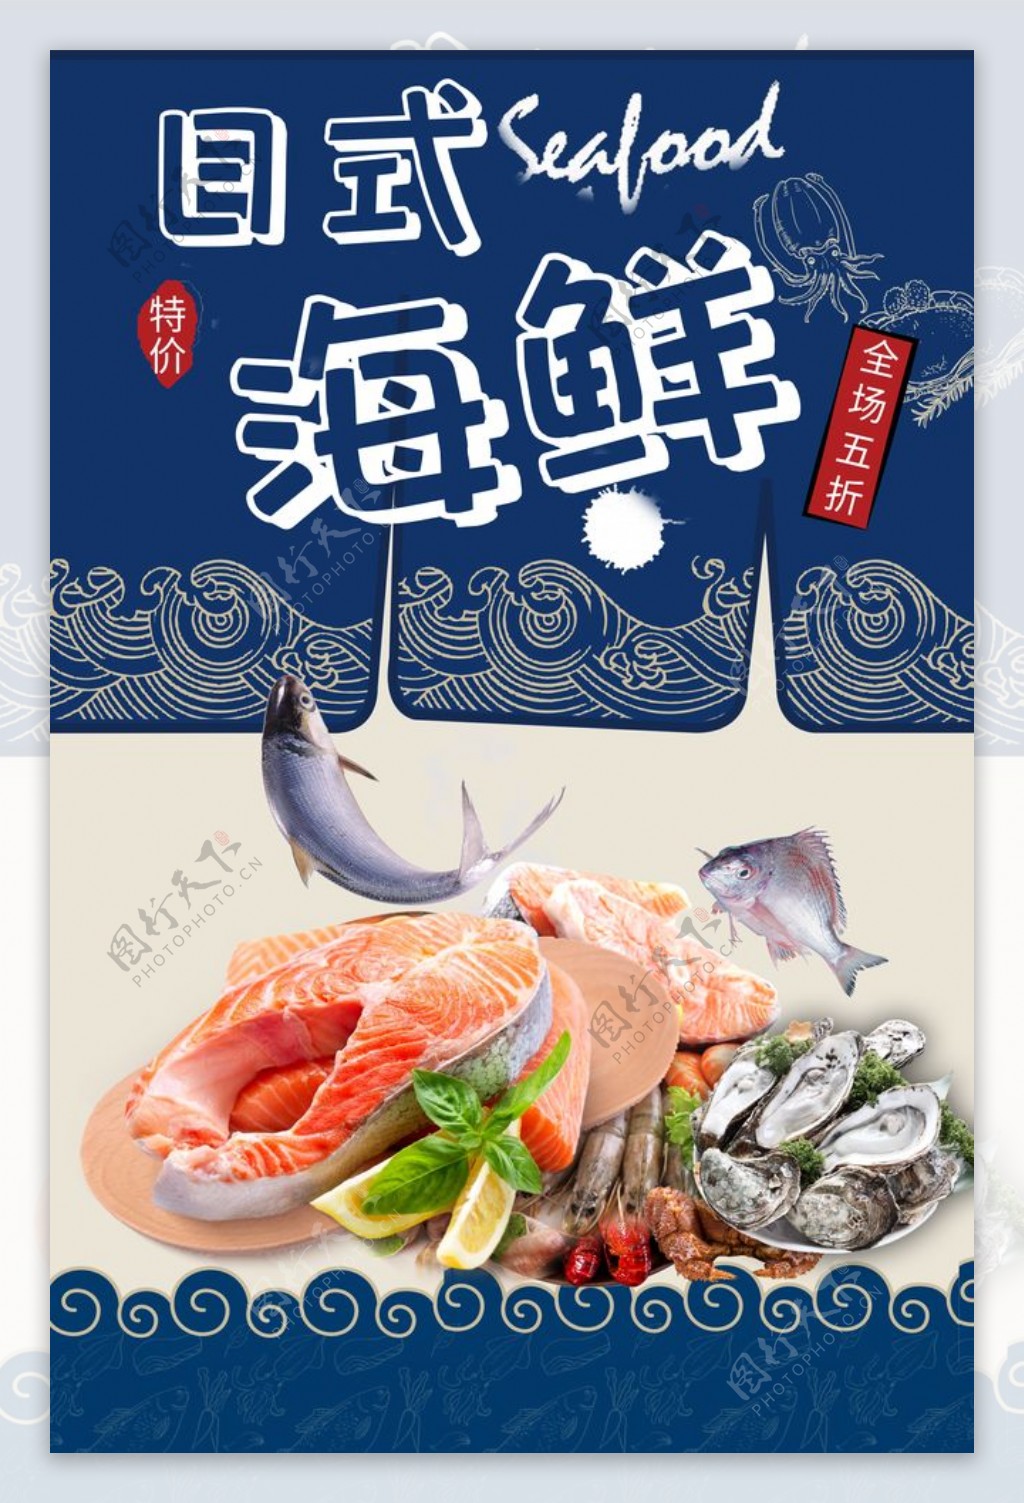 日式海鲜活动促销宣传海报素材图片